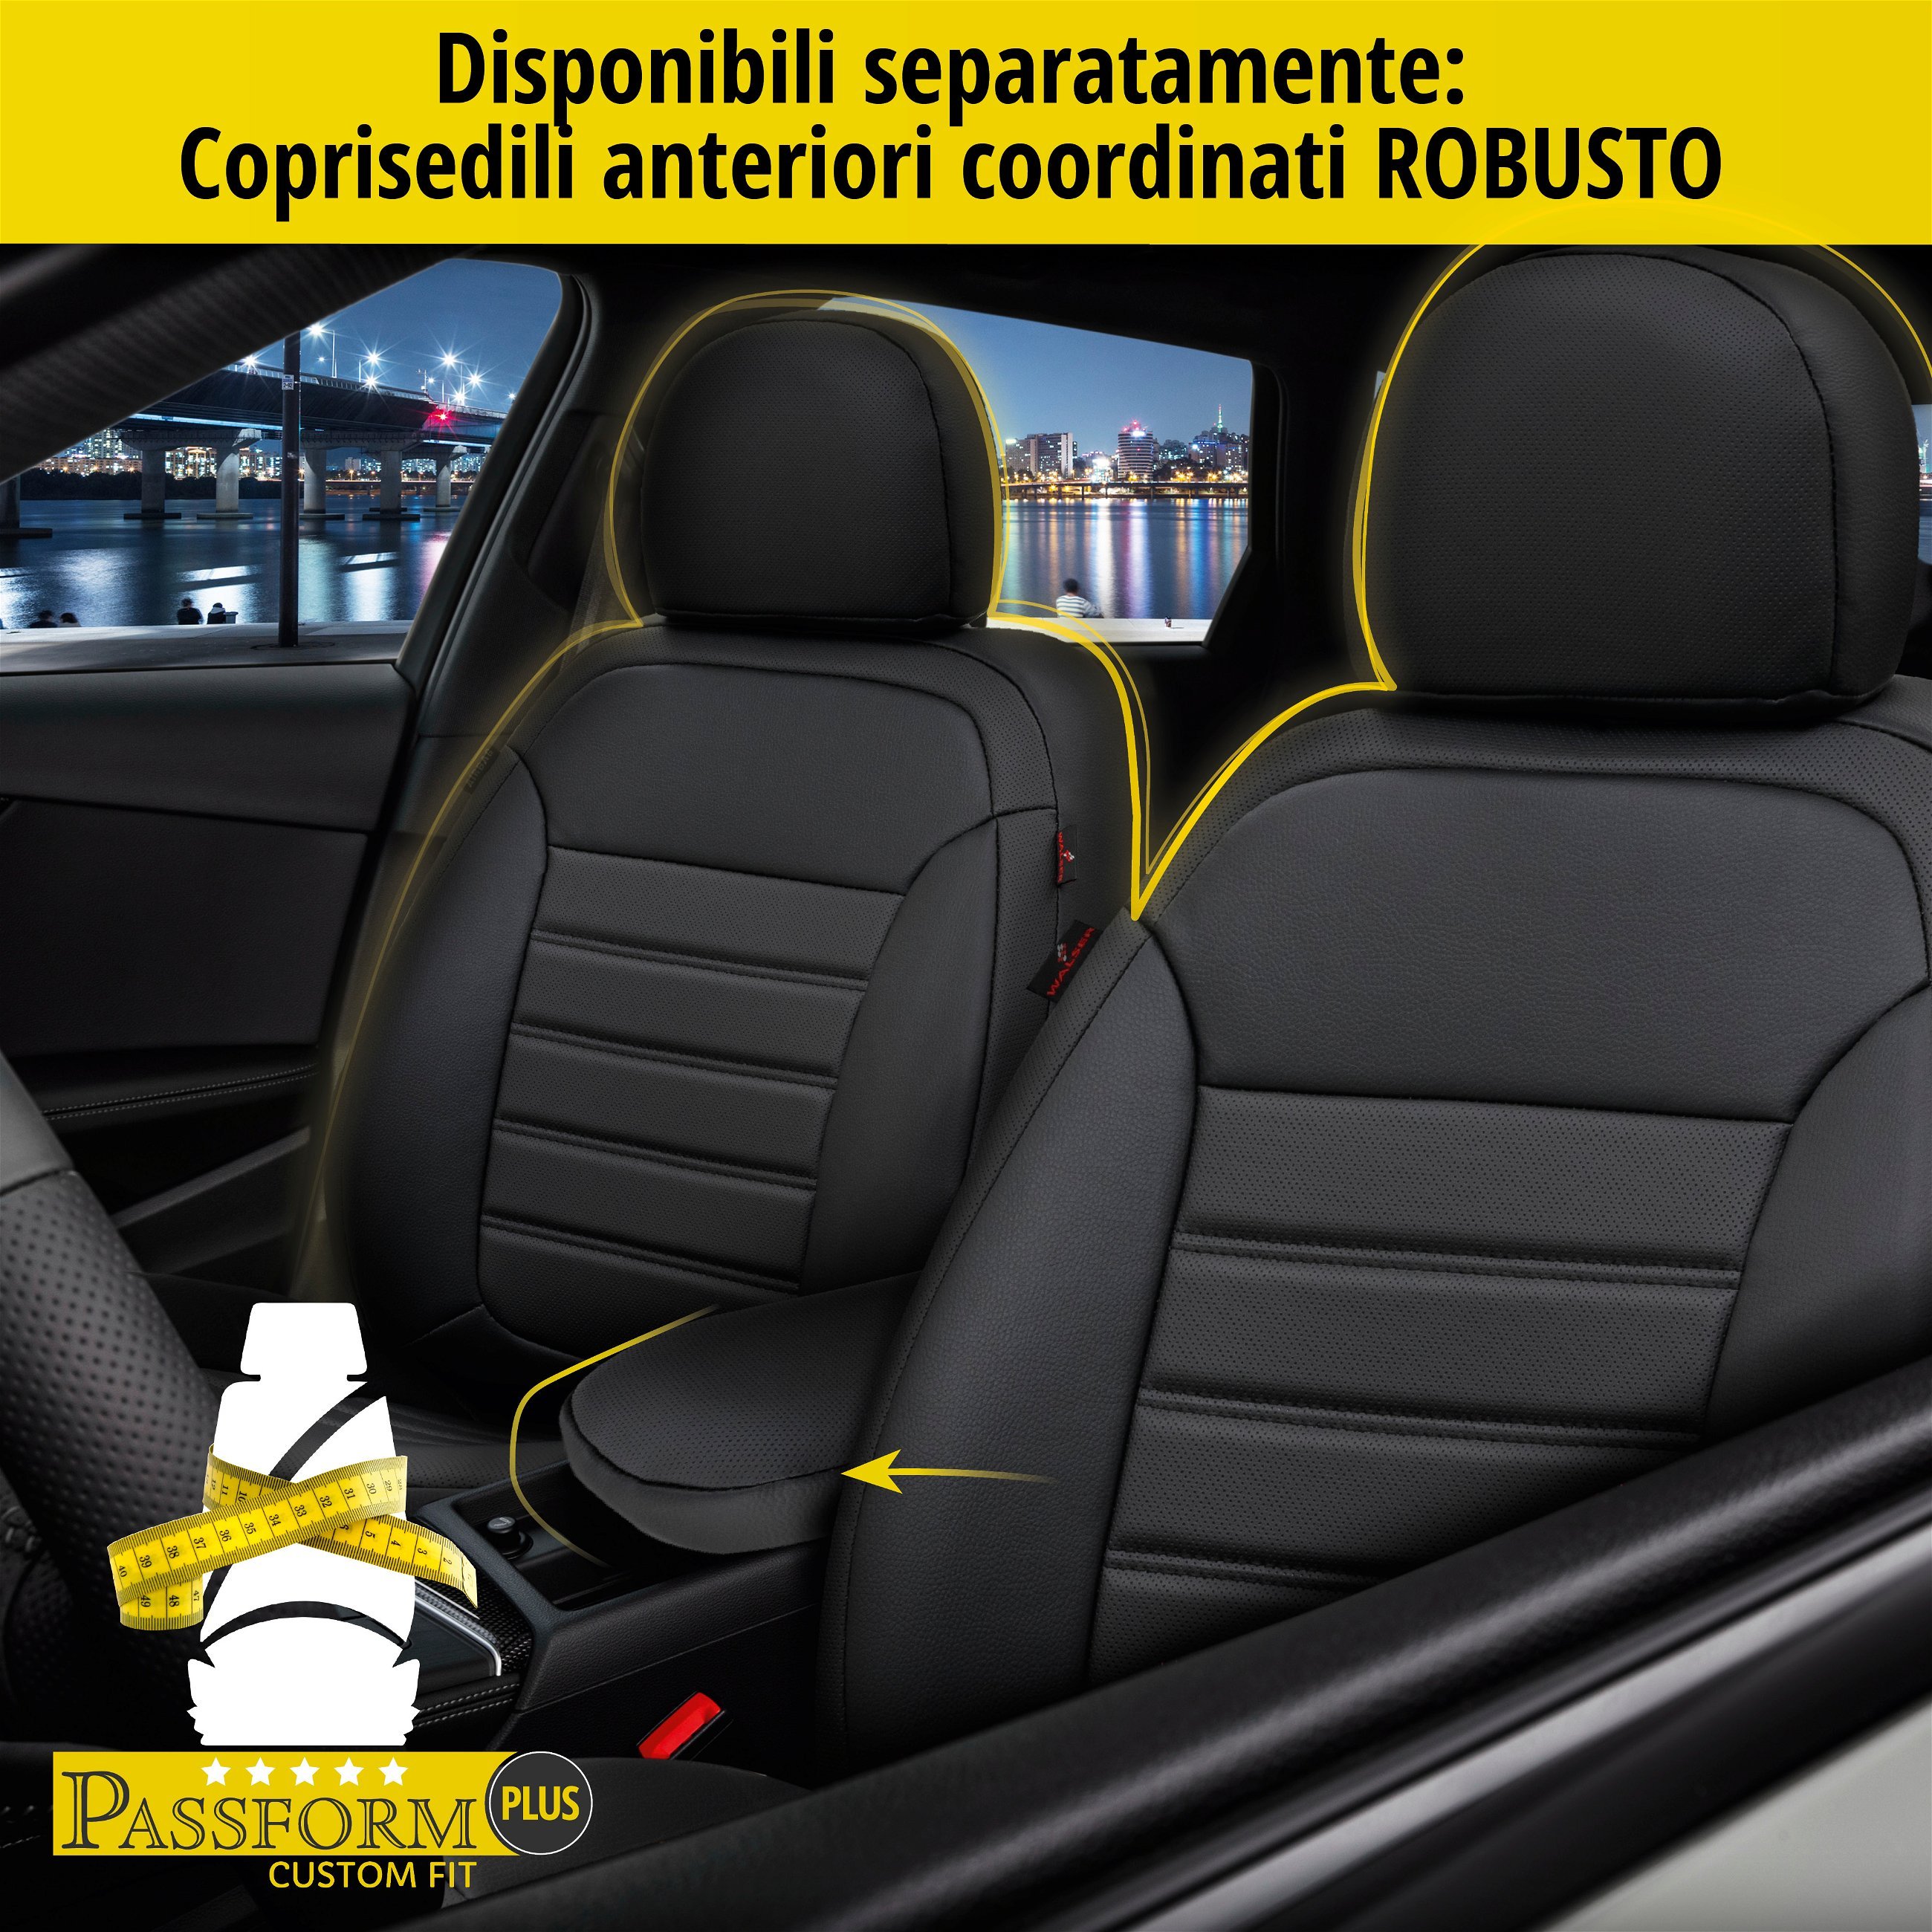 Coprisedili Robusto per Dacia Sandero 06/2008-Oggi, 1 coprisedili posteriore per sedili normali